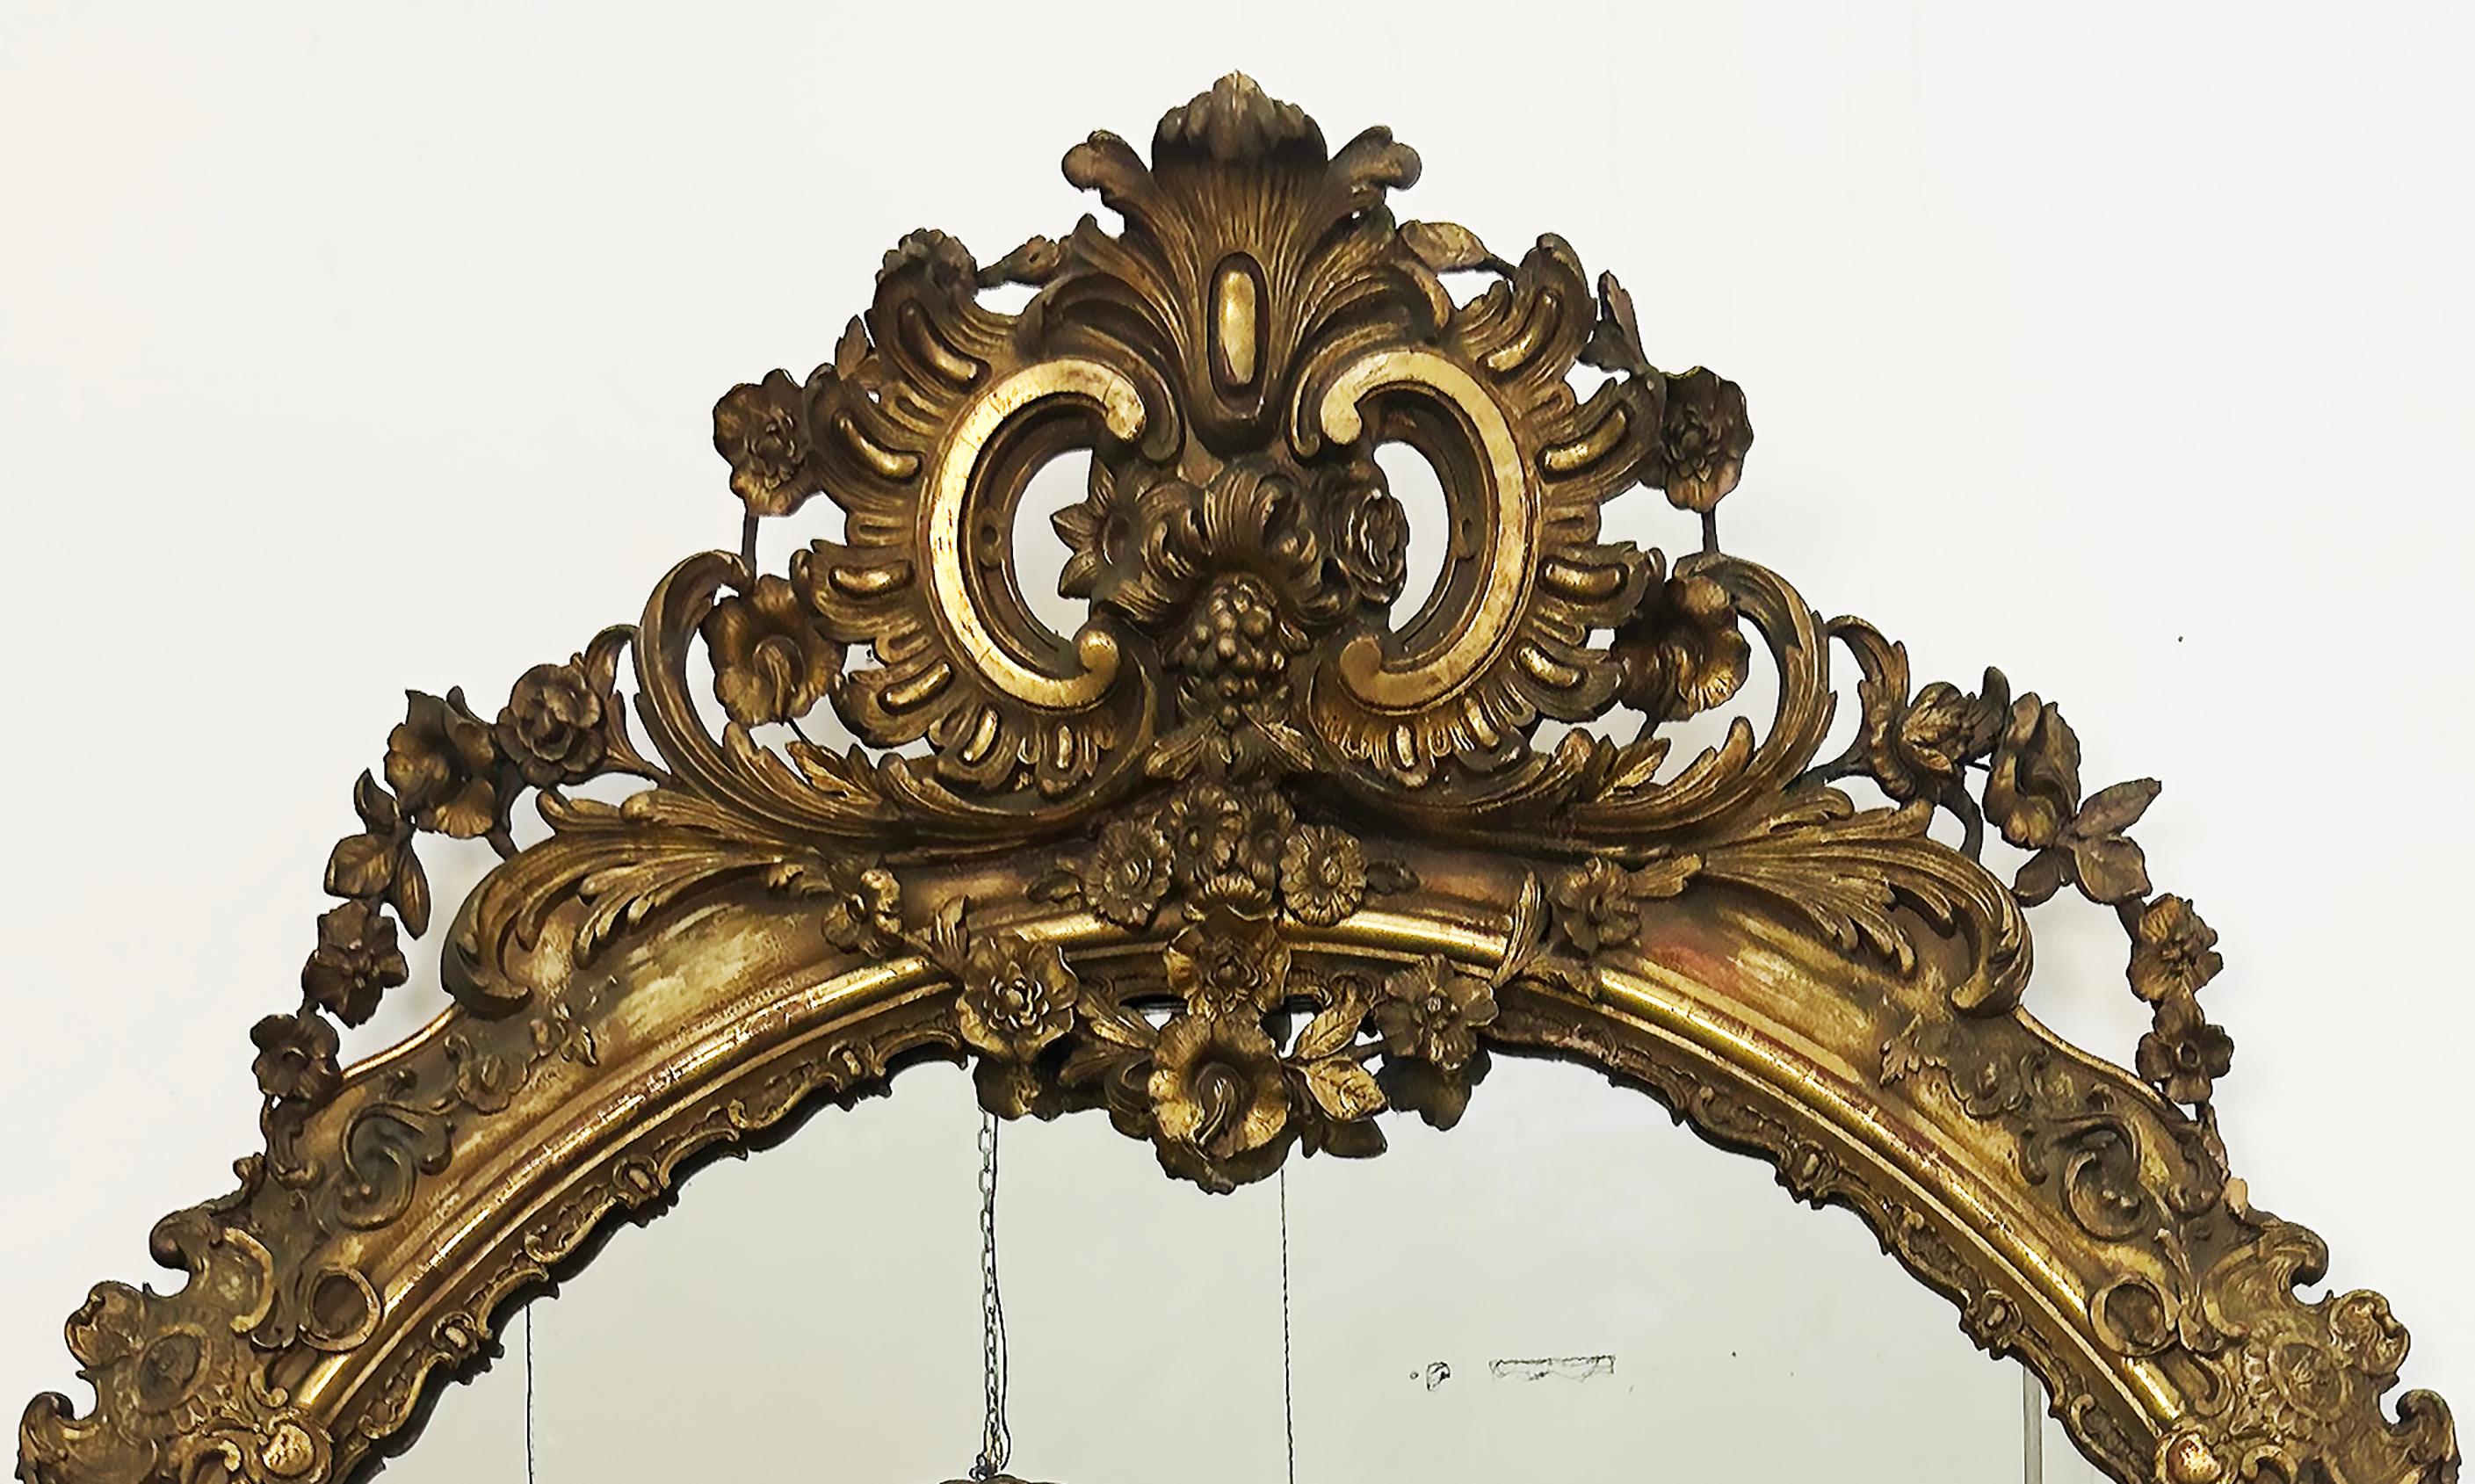 Monumental miroir européen ovale en bois doré, fin 19e-début 20e siècle

Nous proposons à la vente un miroir monumental ovale en gesso et bois doré provenant d'Europe et datant de la fin du XIXe siècle ou du début du XXe siècle. La couronne du